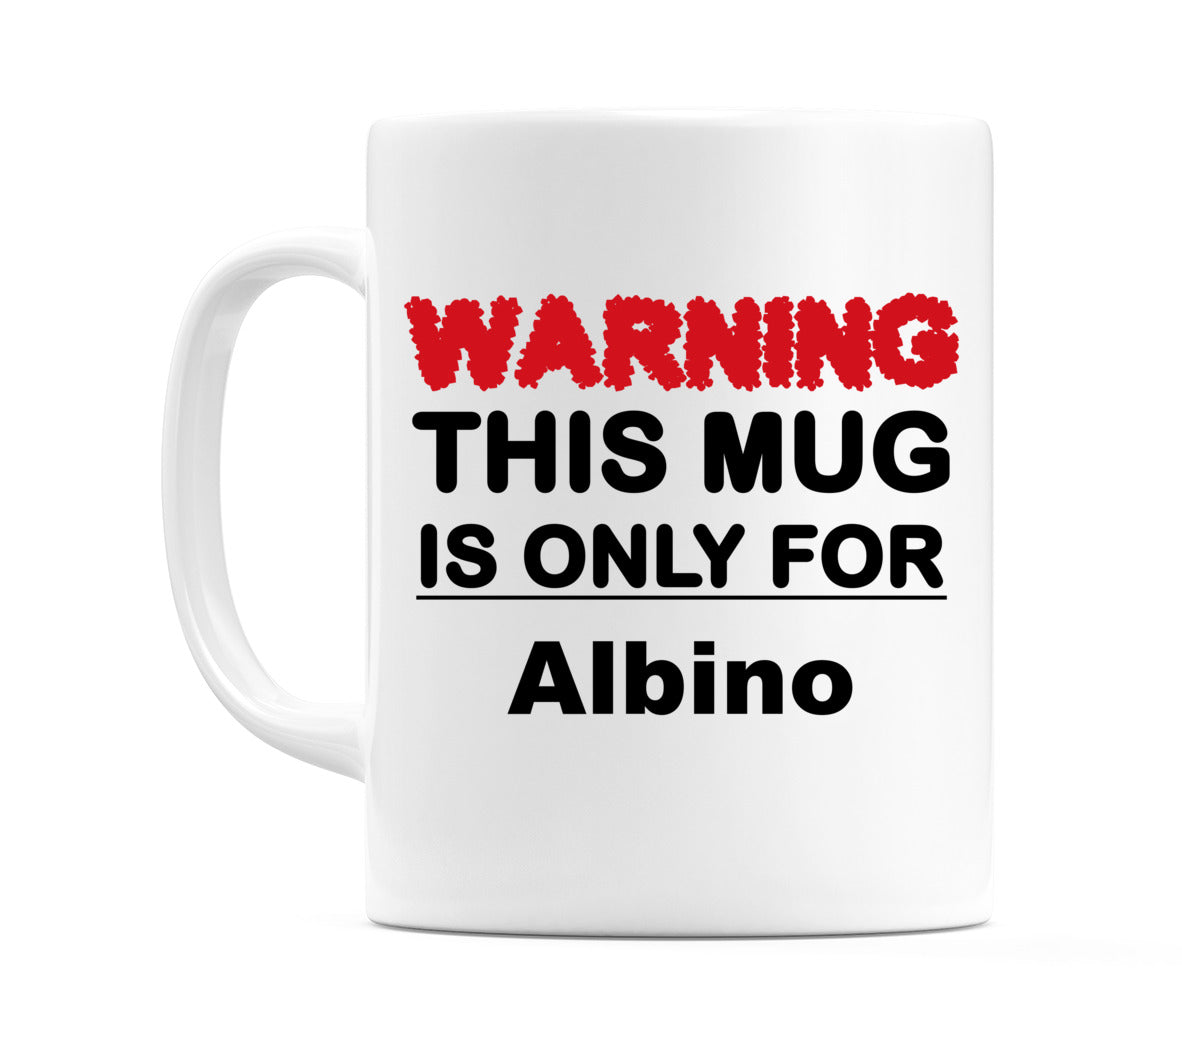 Warning This Mug is ONLY for Albino Mug